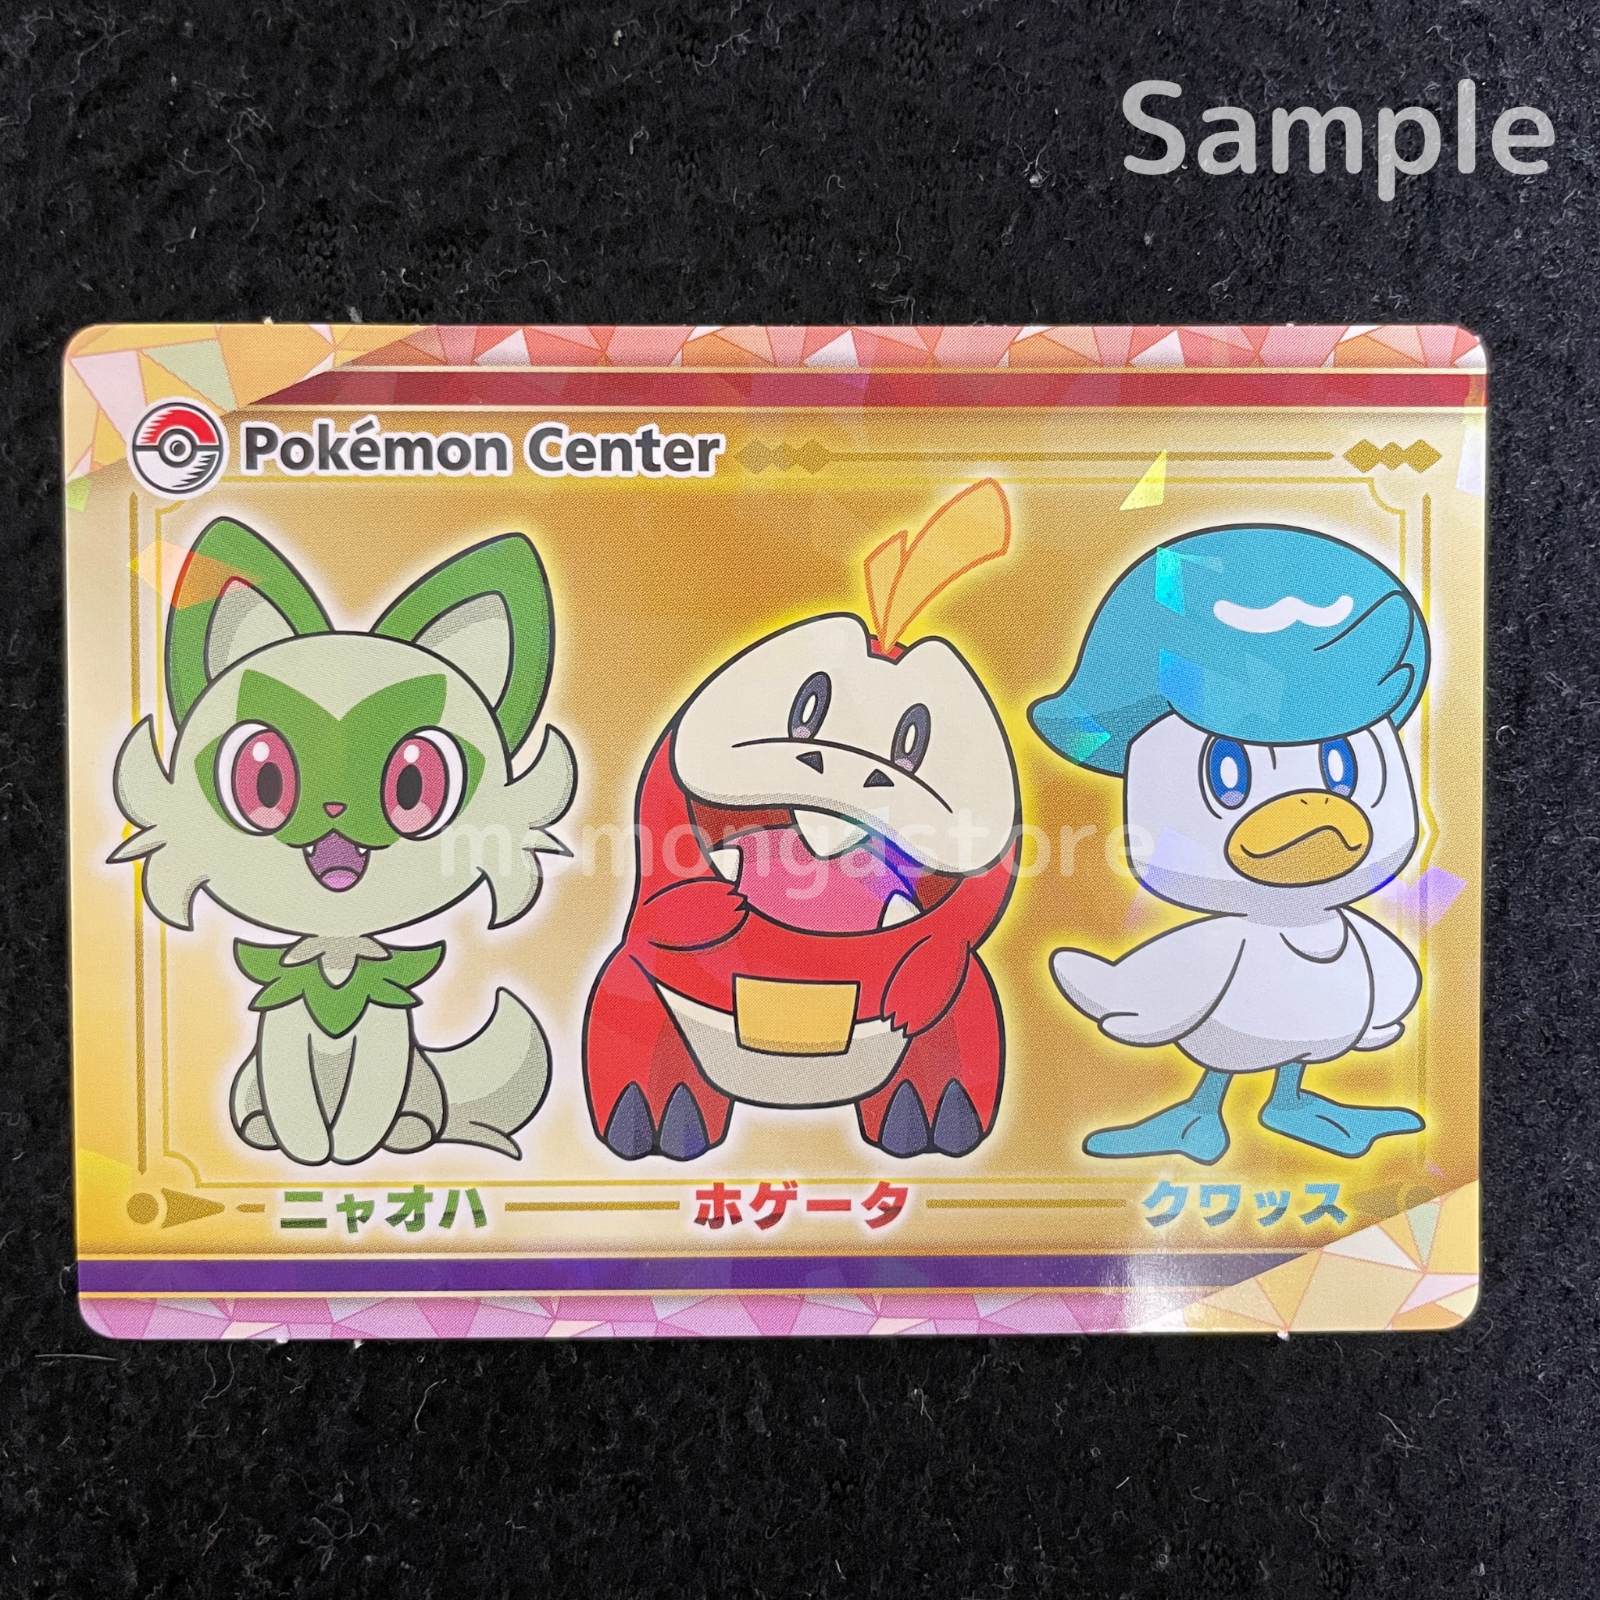 Sealed Pokemon Scarlet & Violet Art books + Pokemon Center Limited Card Set Pokémon Center Does not apply - фотография #22